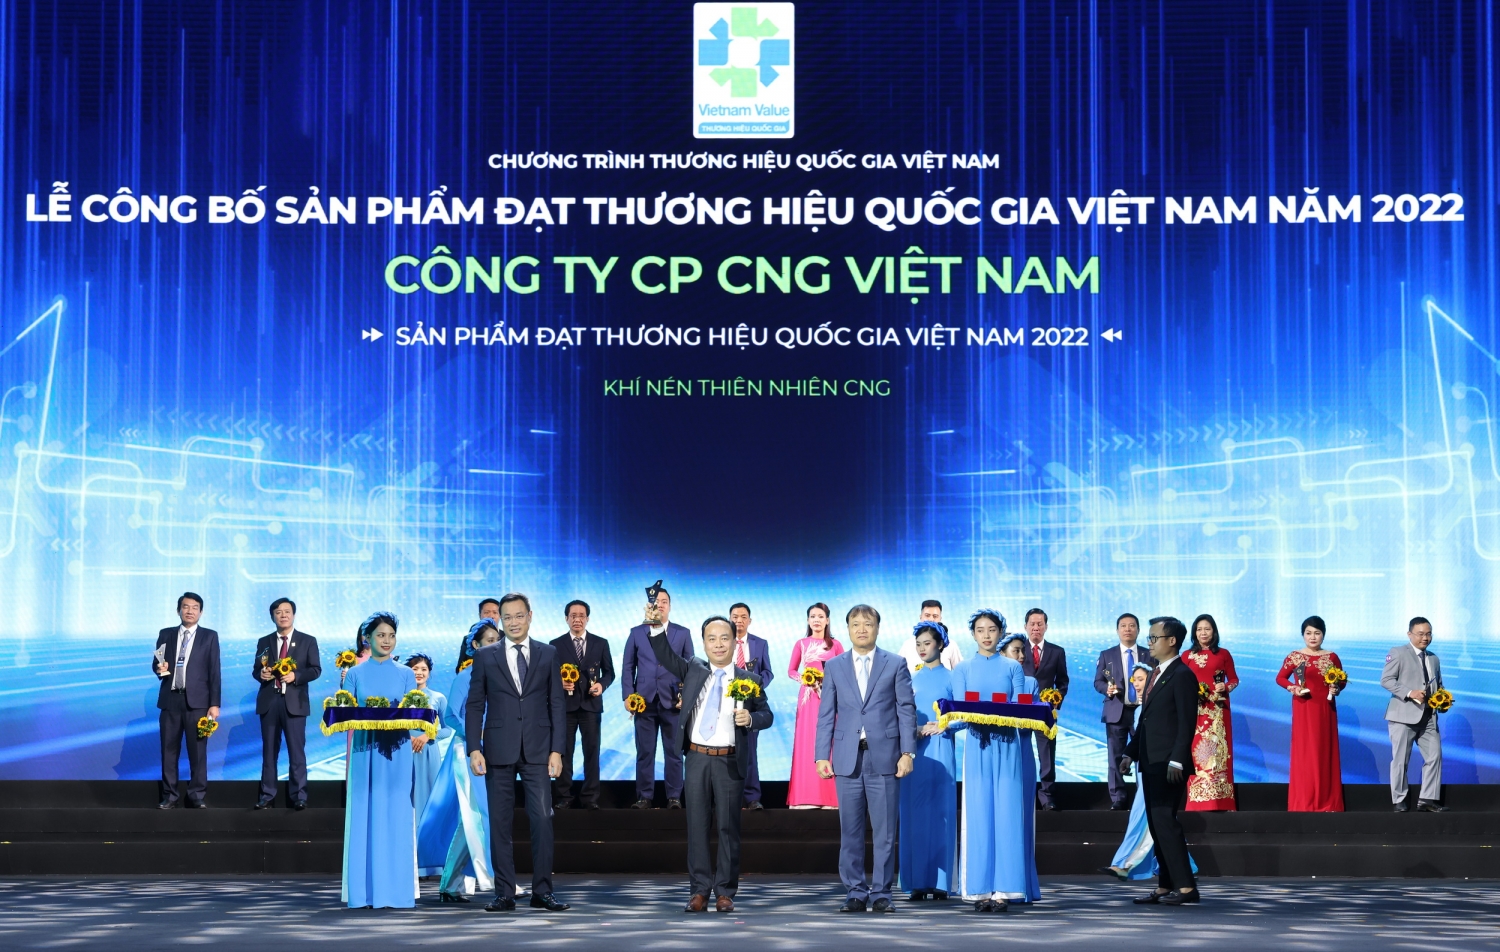 Công ty CP CNG Việt Nam nhận vinh danh Thương hiệu quốc gia Việt Nam năm 2022